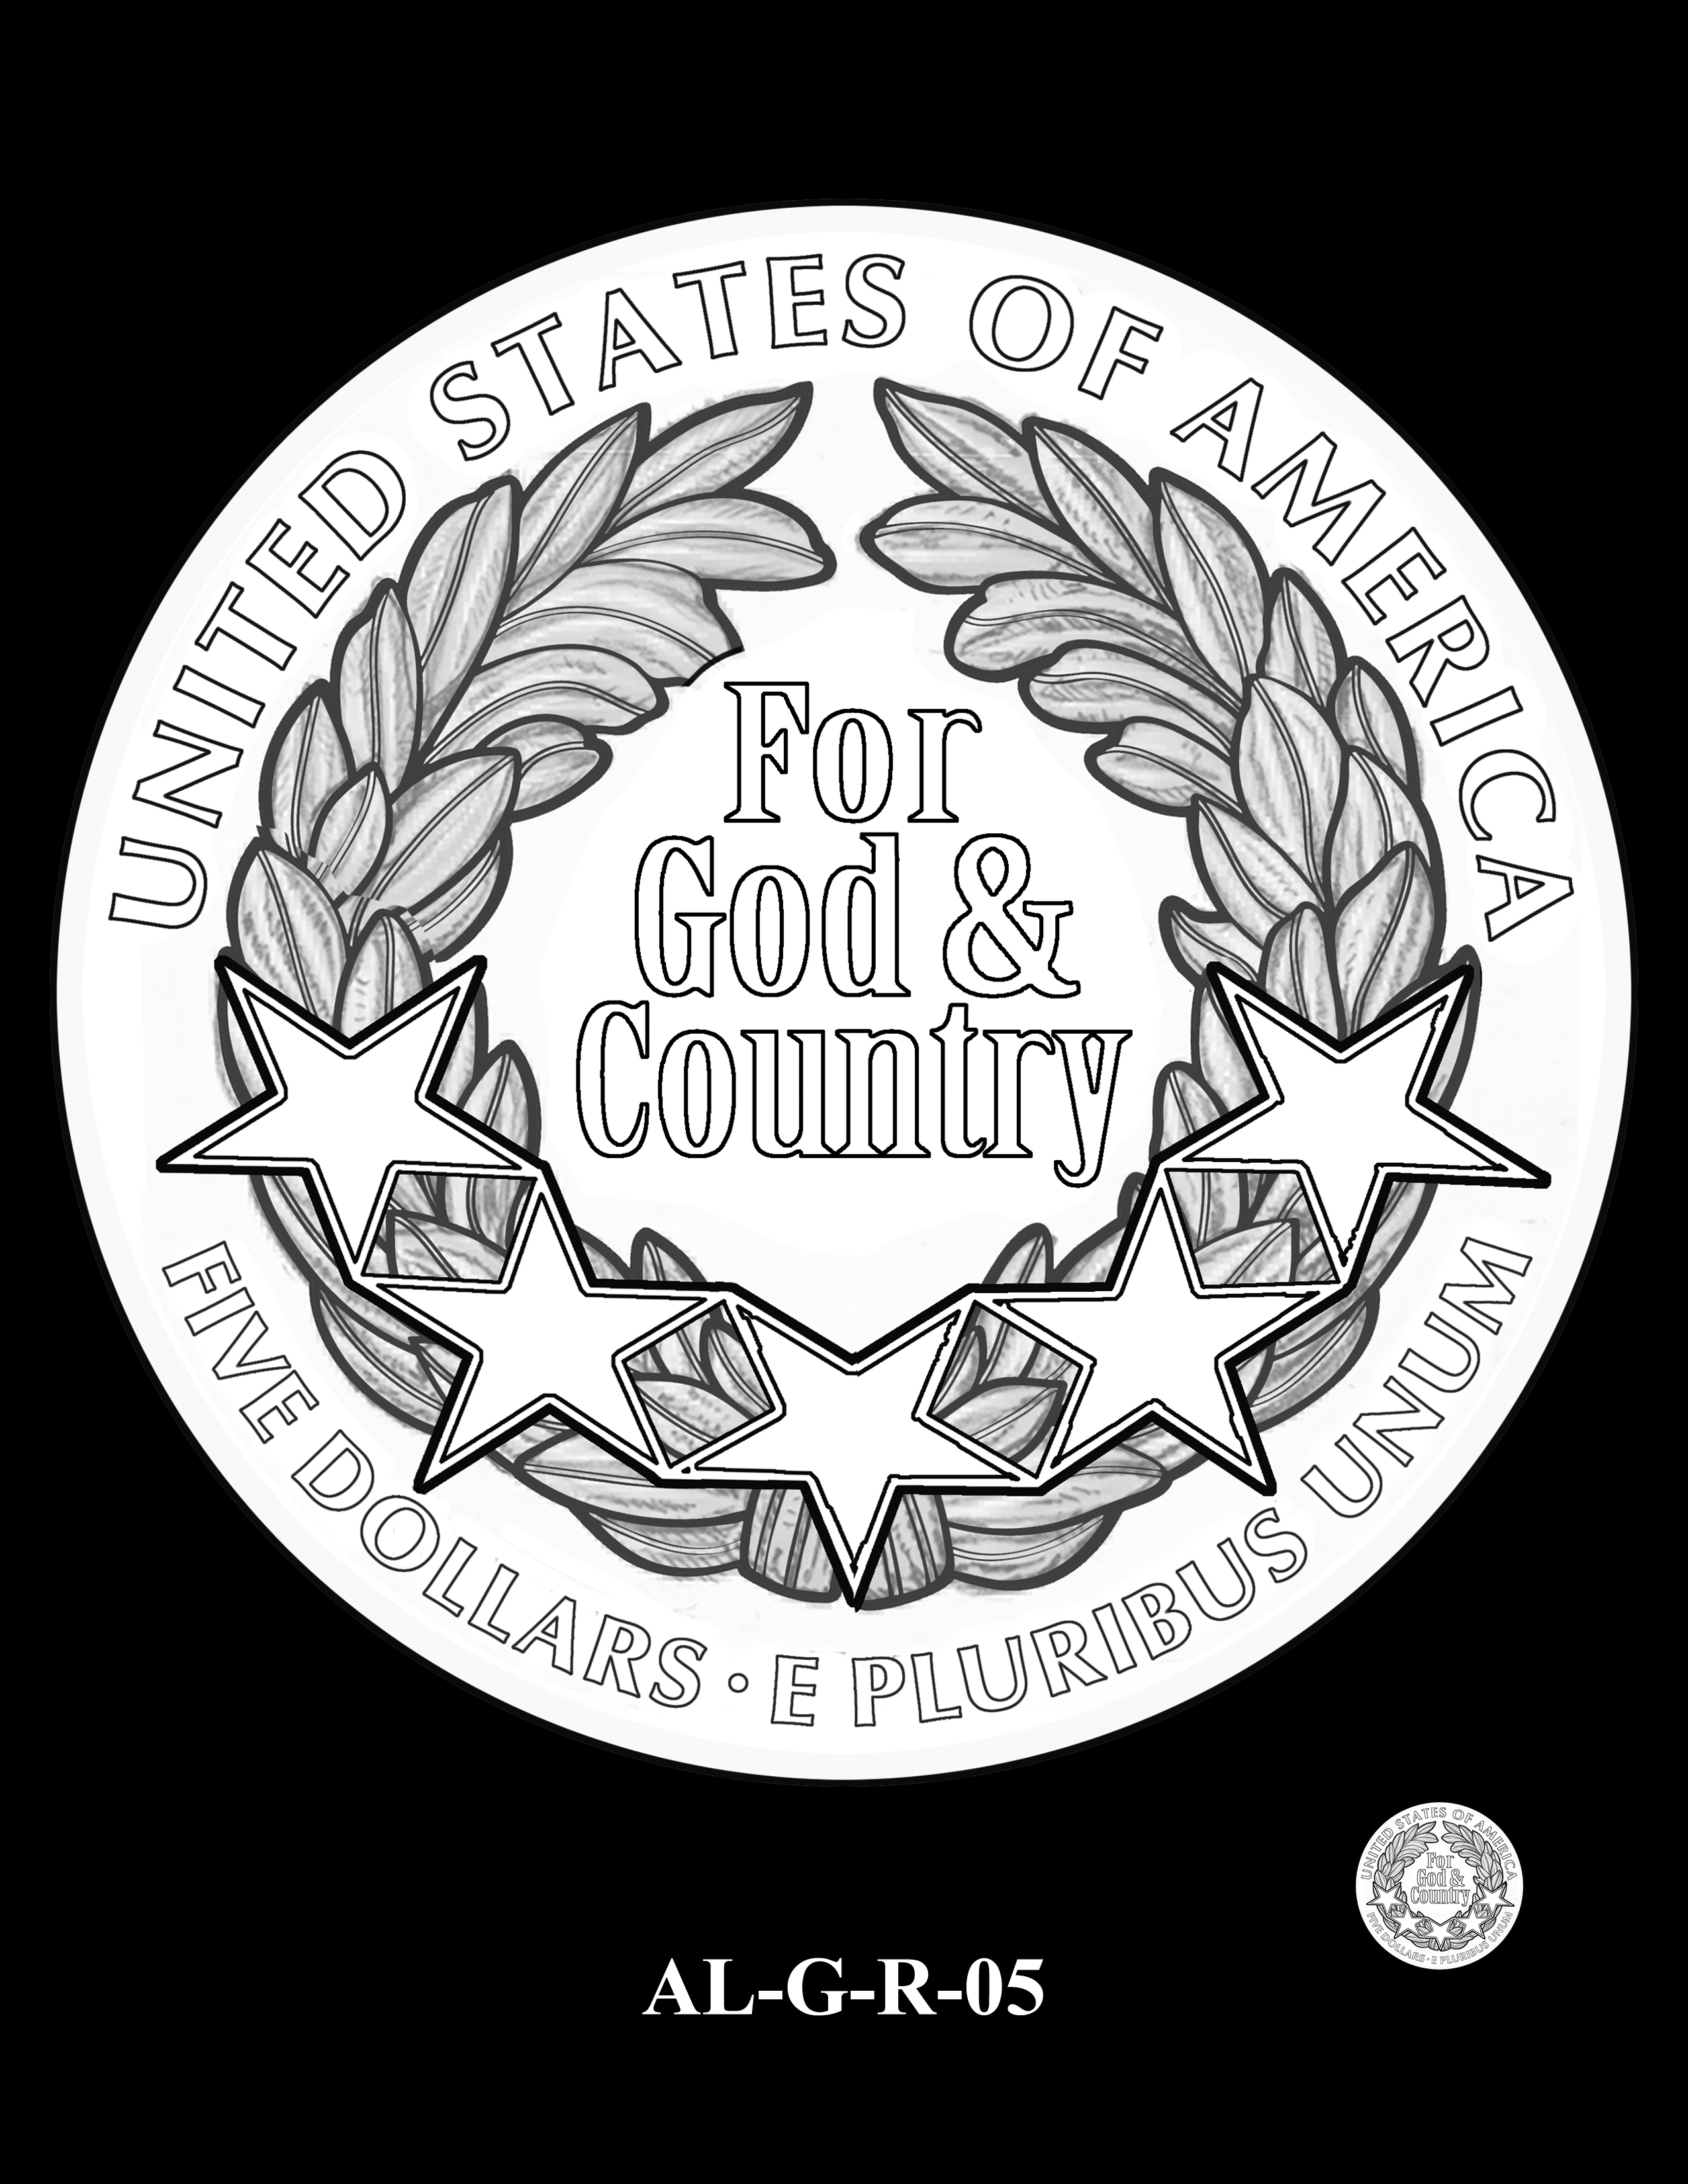 AL-G-R-05 -- 2019 American Legion 100th Anniversary Commemorative Coin Program - Gold Reverse